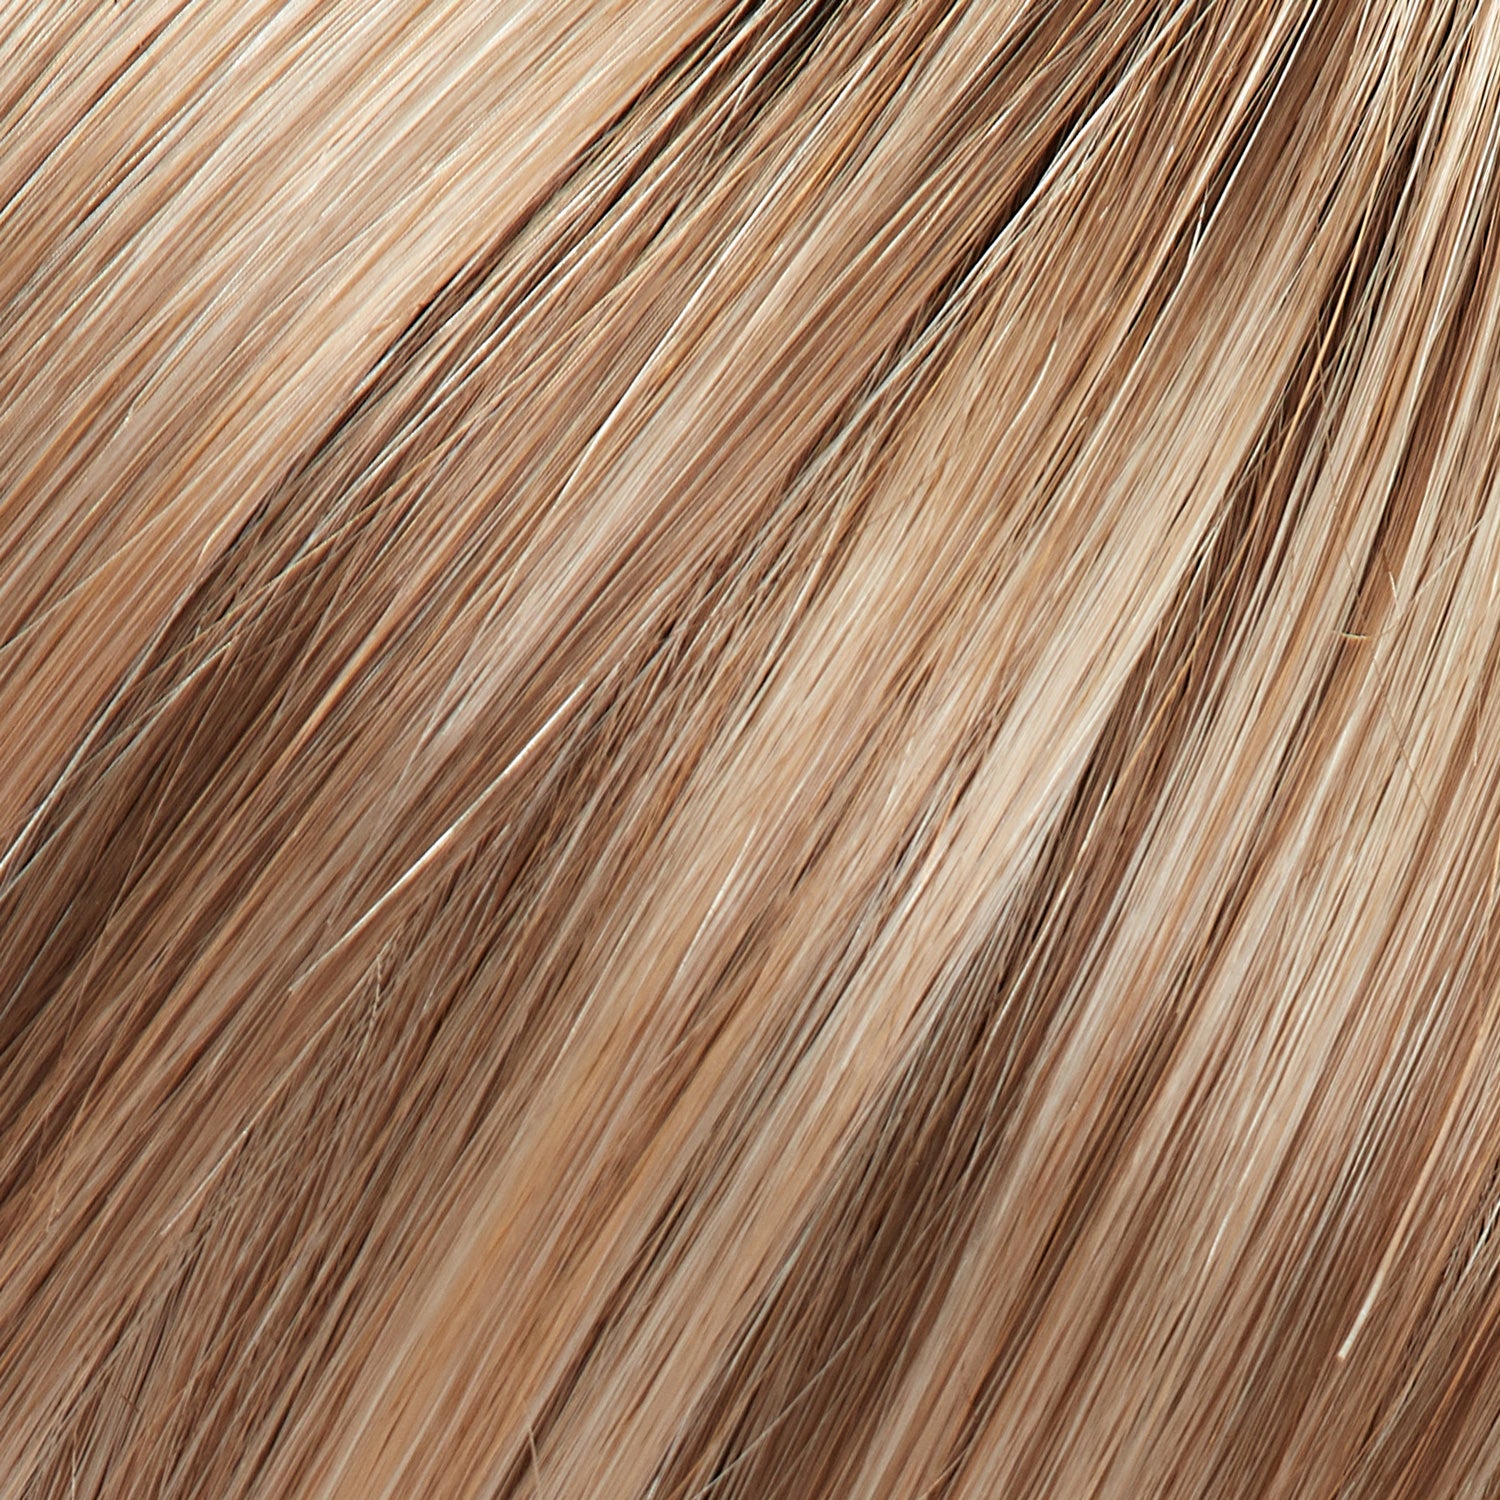 Perruque Cheveux Blonds Synthetiques Jon Renau Emilia Couleur Malibu 12fs12